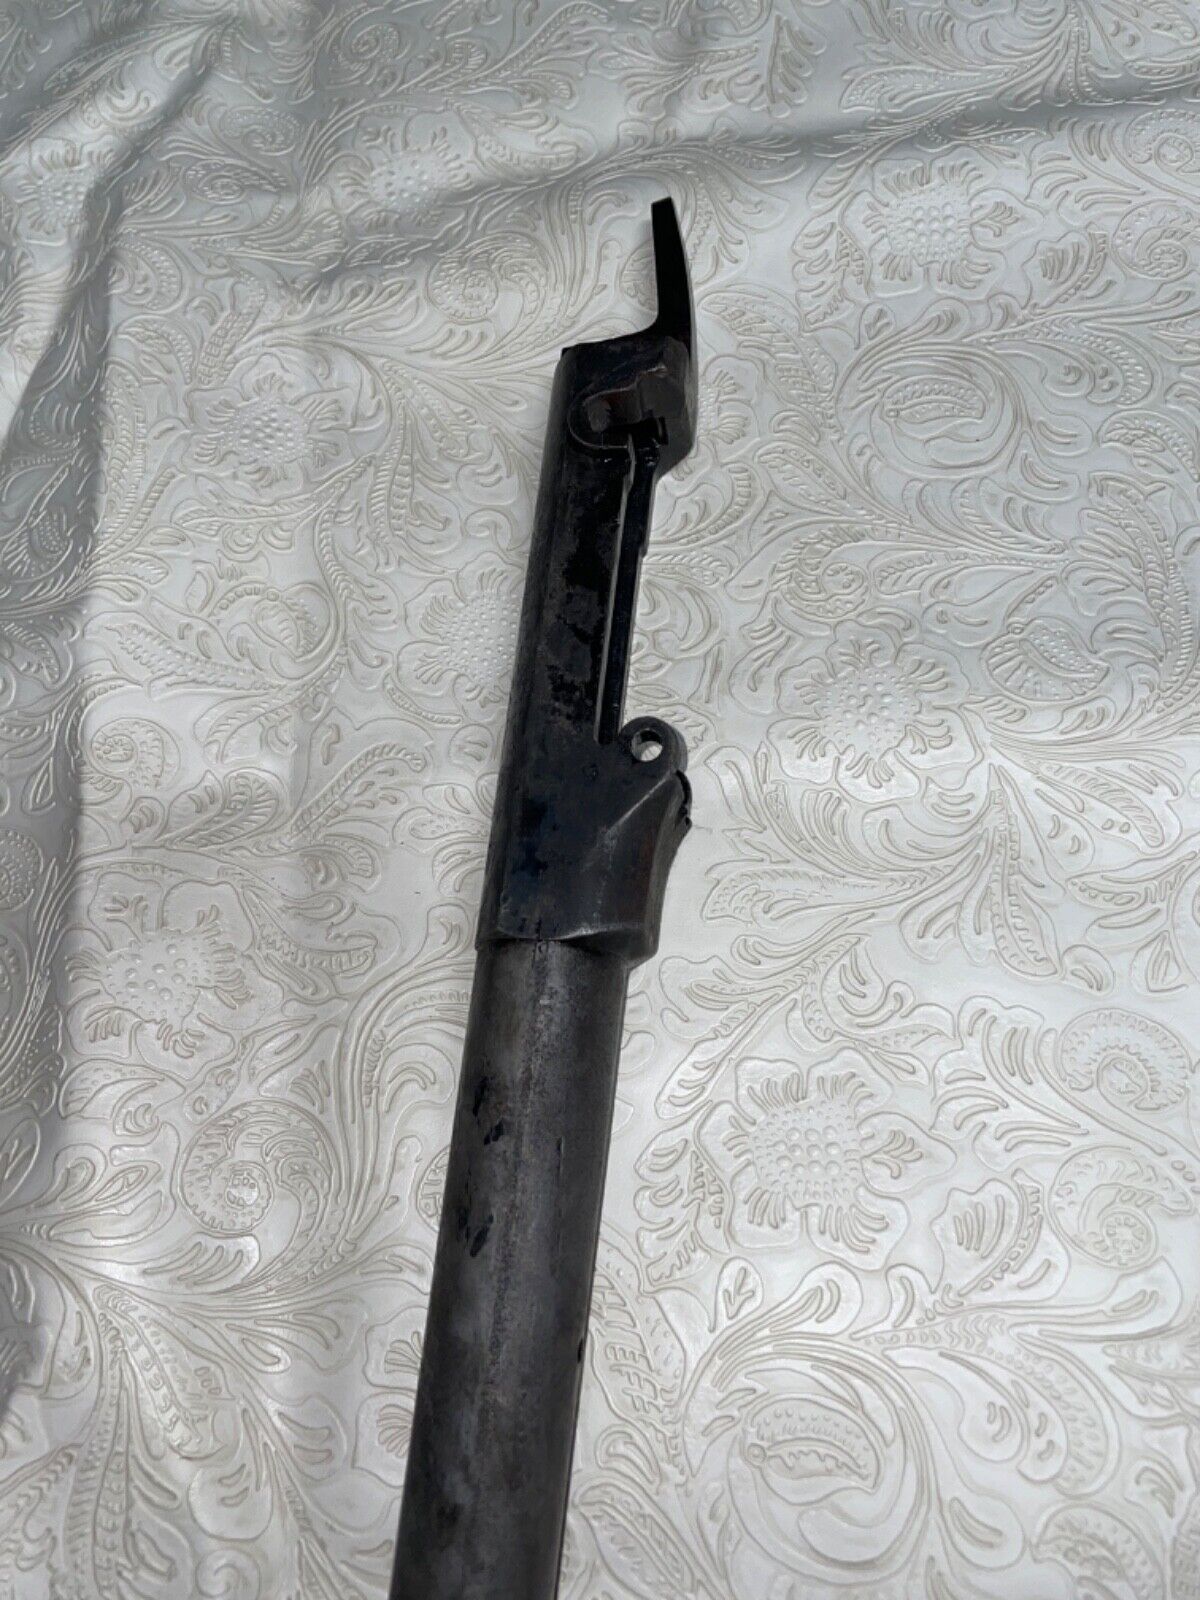 U.S. SPRINGFIELD MODEL 1873 TRAPS DOOR GUN BARREL (Serial #383696)